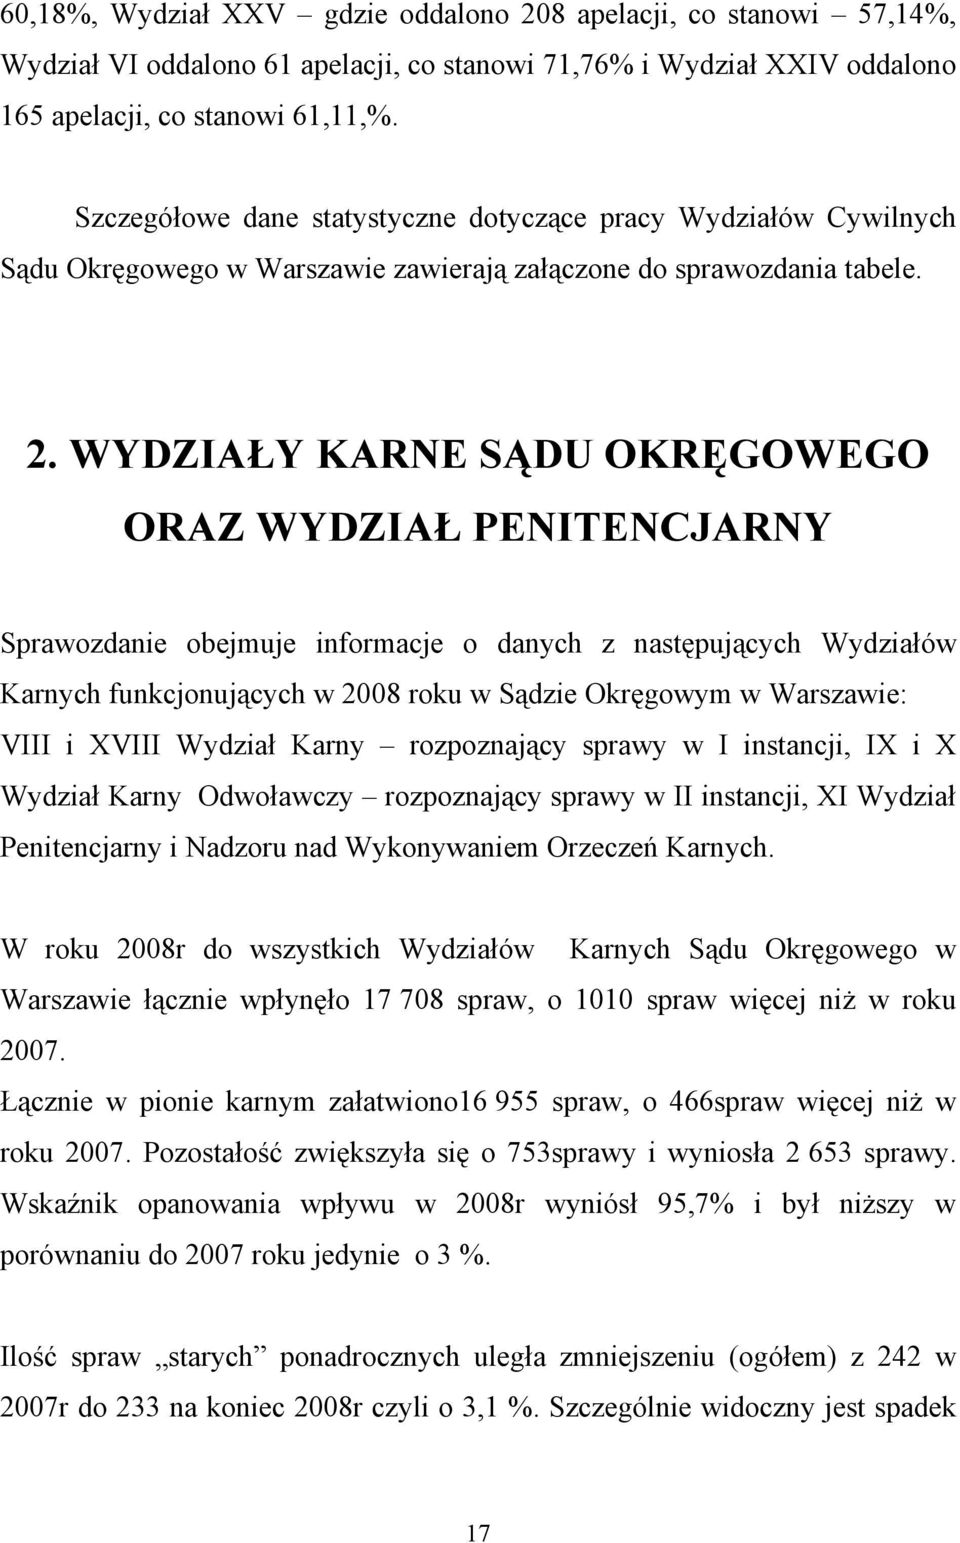 WYDZIAŁY KARNE SĄDU OKRĘGOWEGO ORAZ WYDZIAŁ PENITENCJARNY Sprawozdanie obejmuje informacje o danych z następujących Wydziałów Karnych funkcjonujących w 2008 roku w Sądzie Okręgowym w Warszawie: VIII